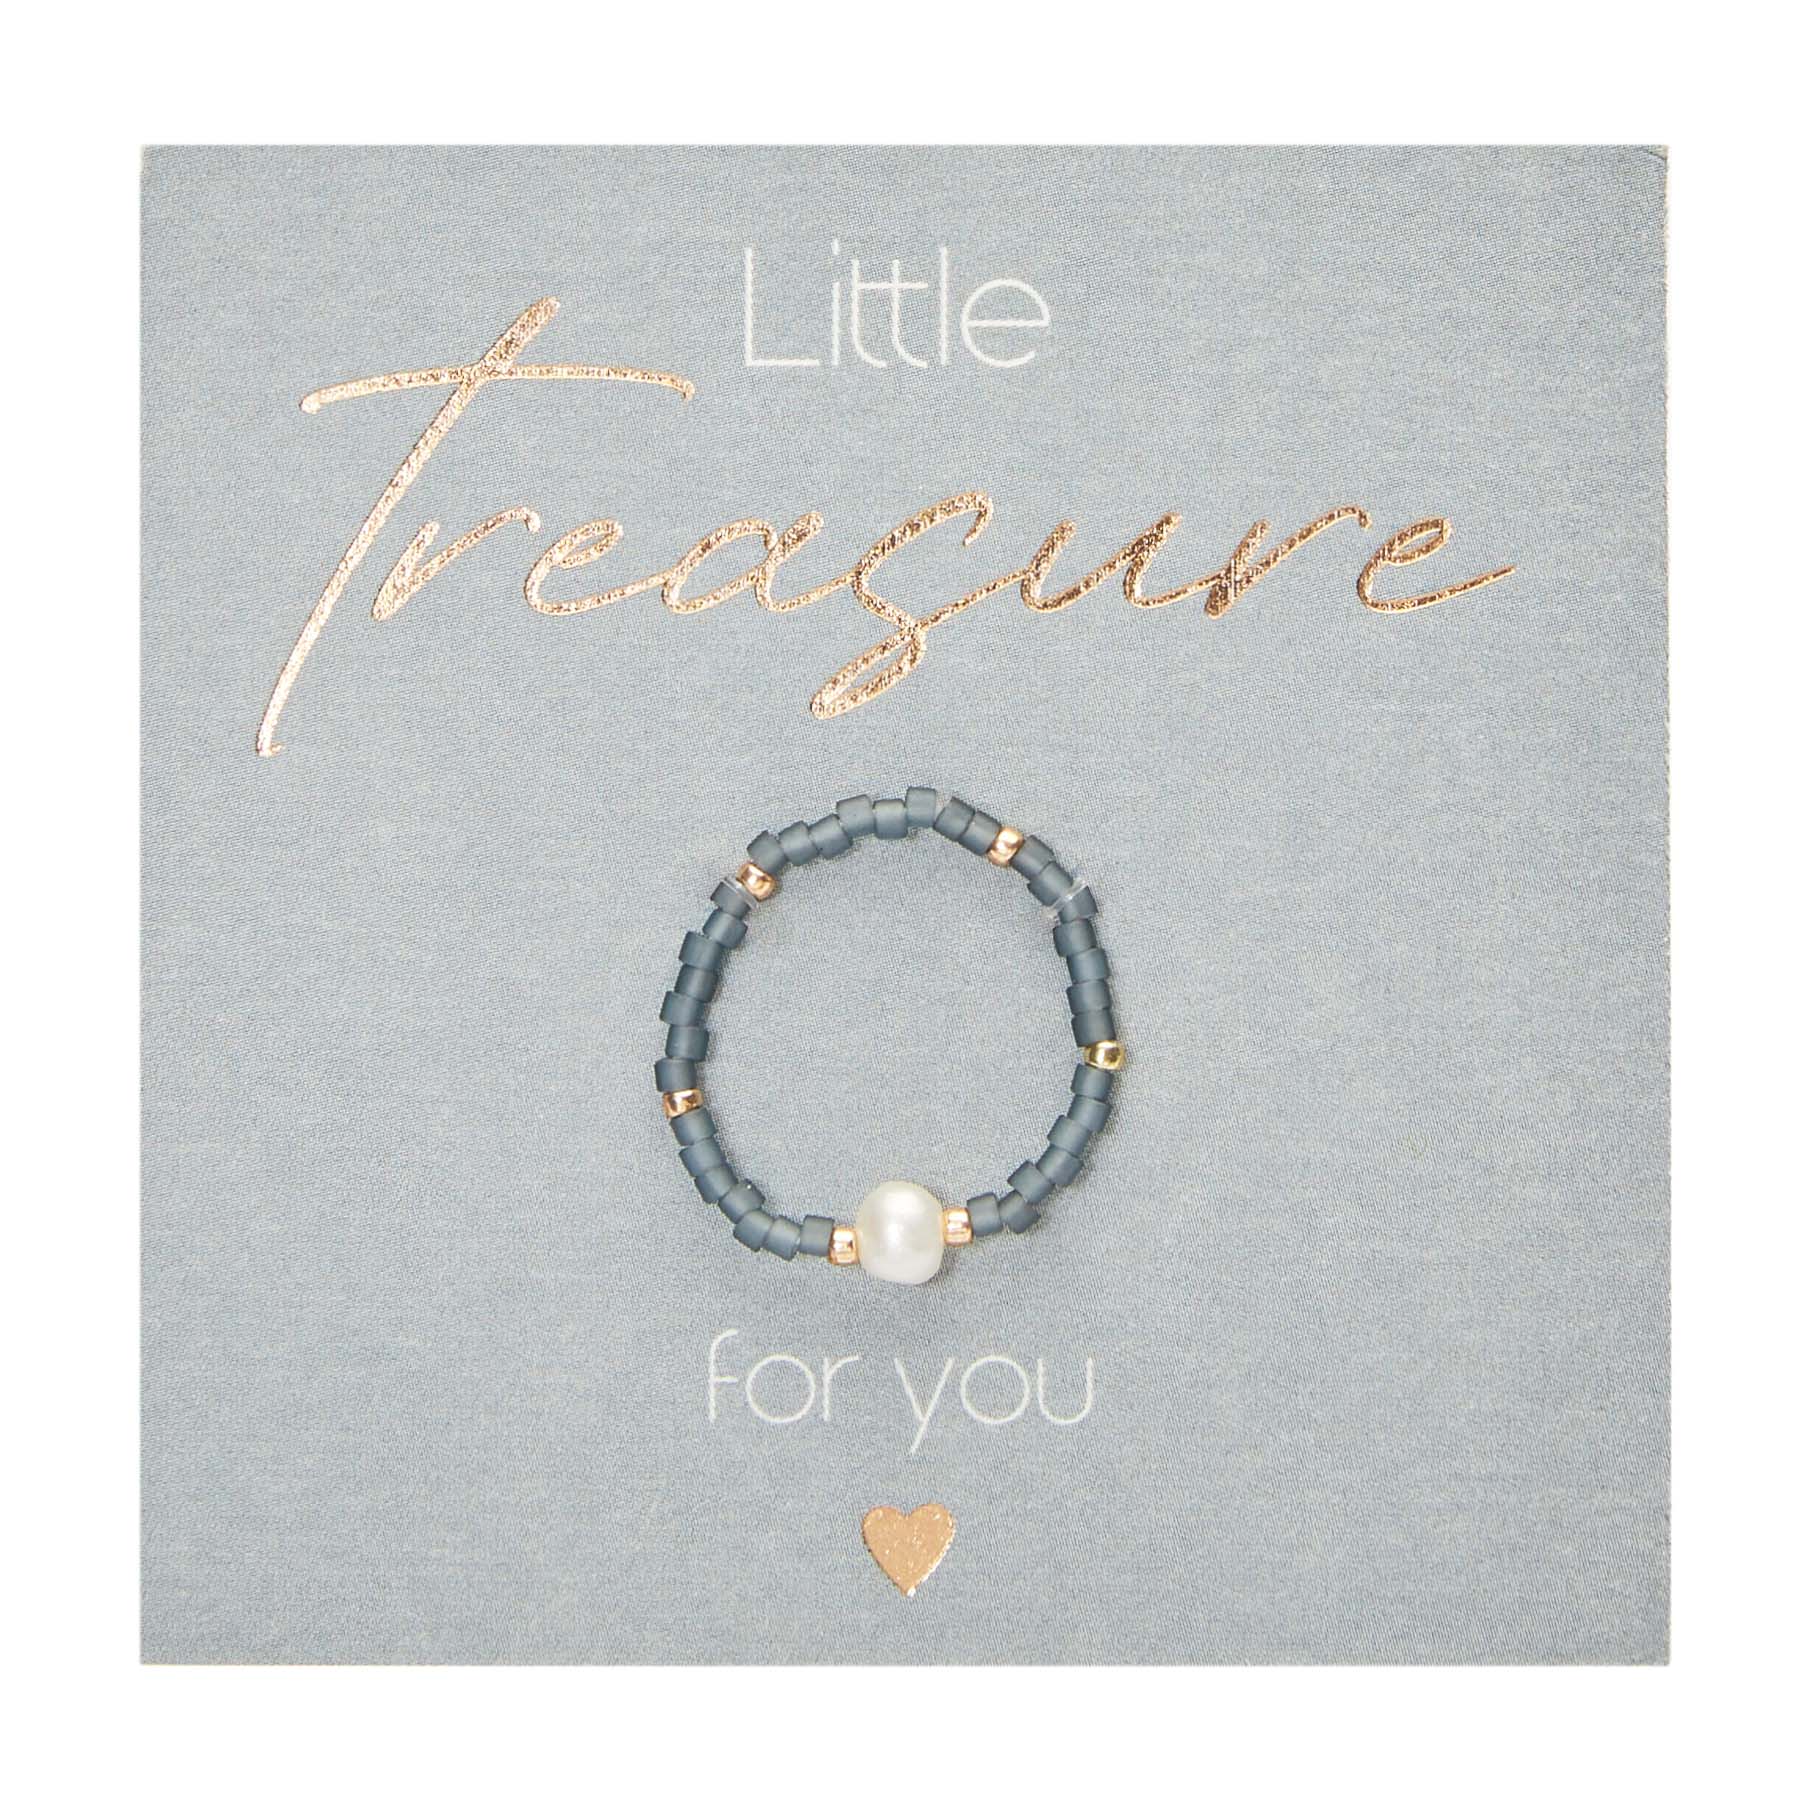 Display rings - "Little Treasure" 